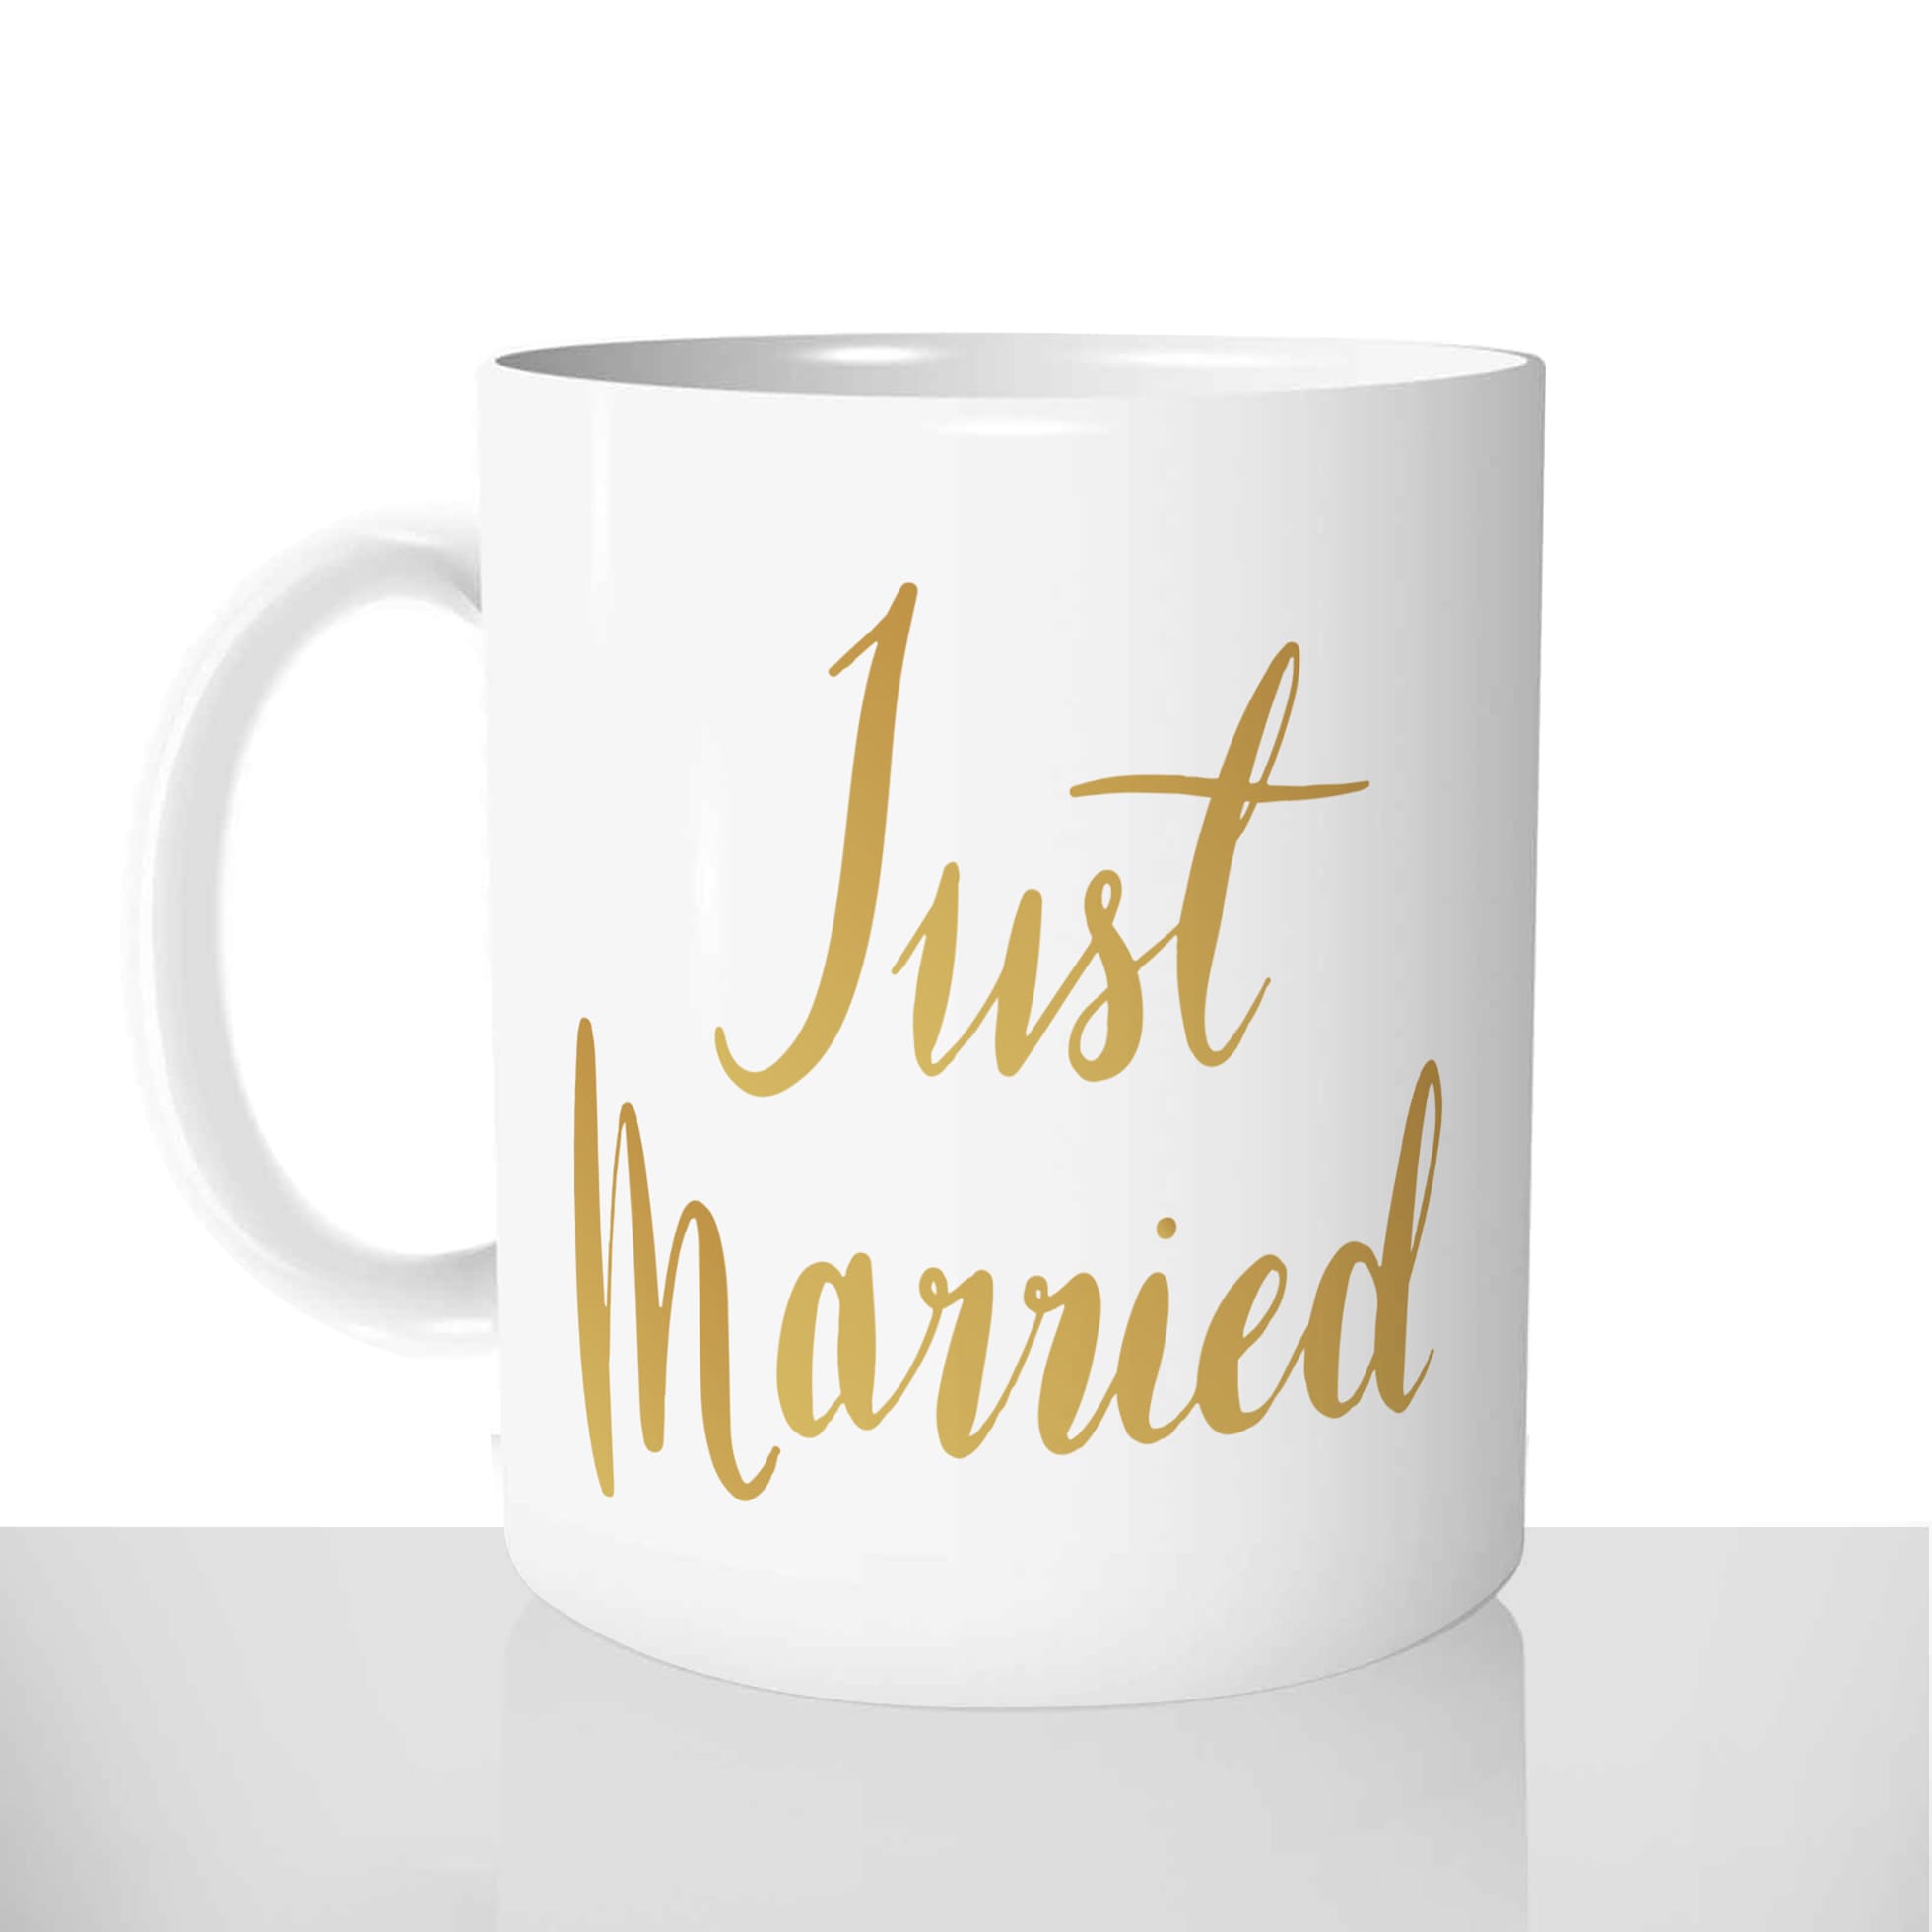 mug classique en céramique 11oz personnalisé personnalisation photo mariage jeunes mariés just married anglais cadeau chou personnalisable